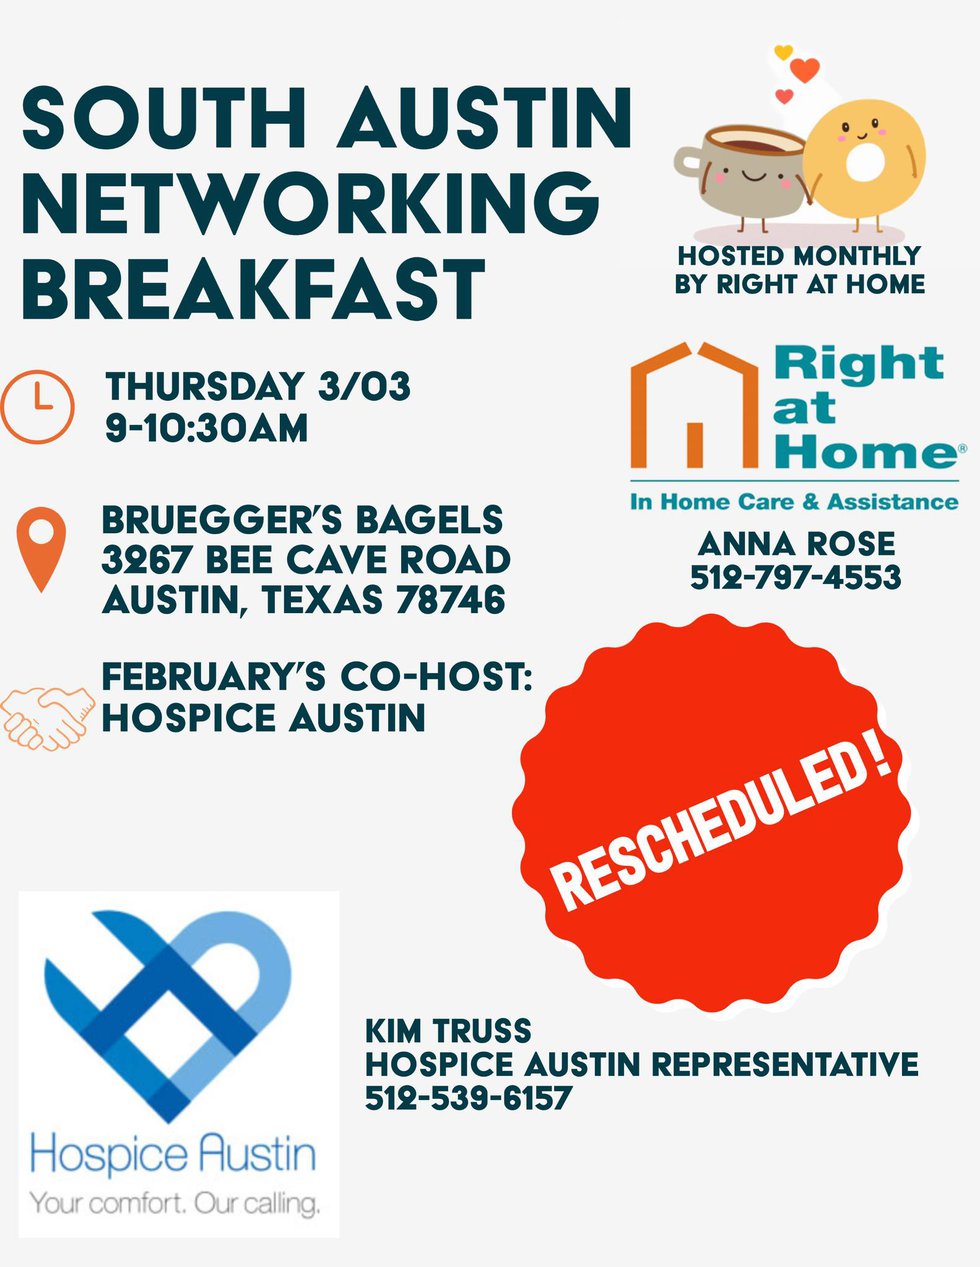 South Austin Networking Breakfast March 2022.jpg